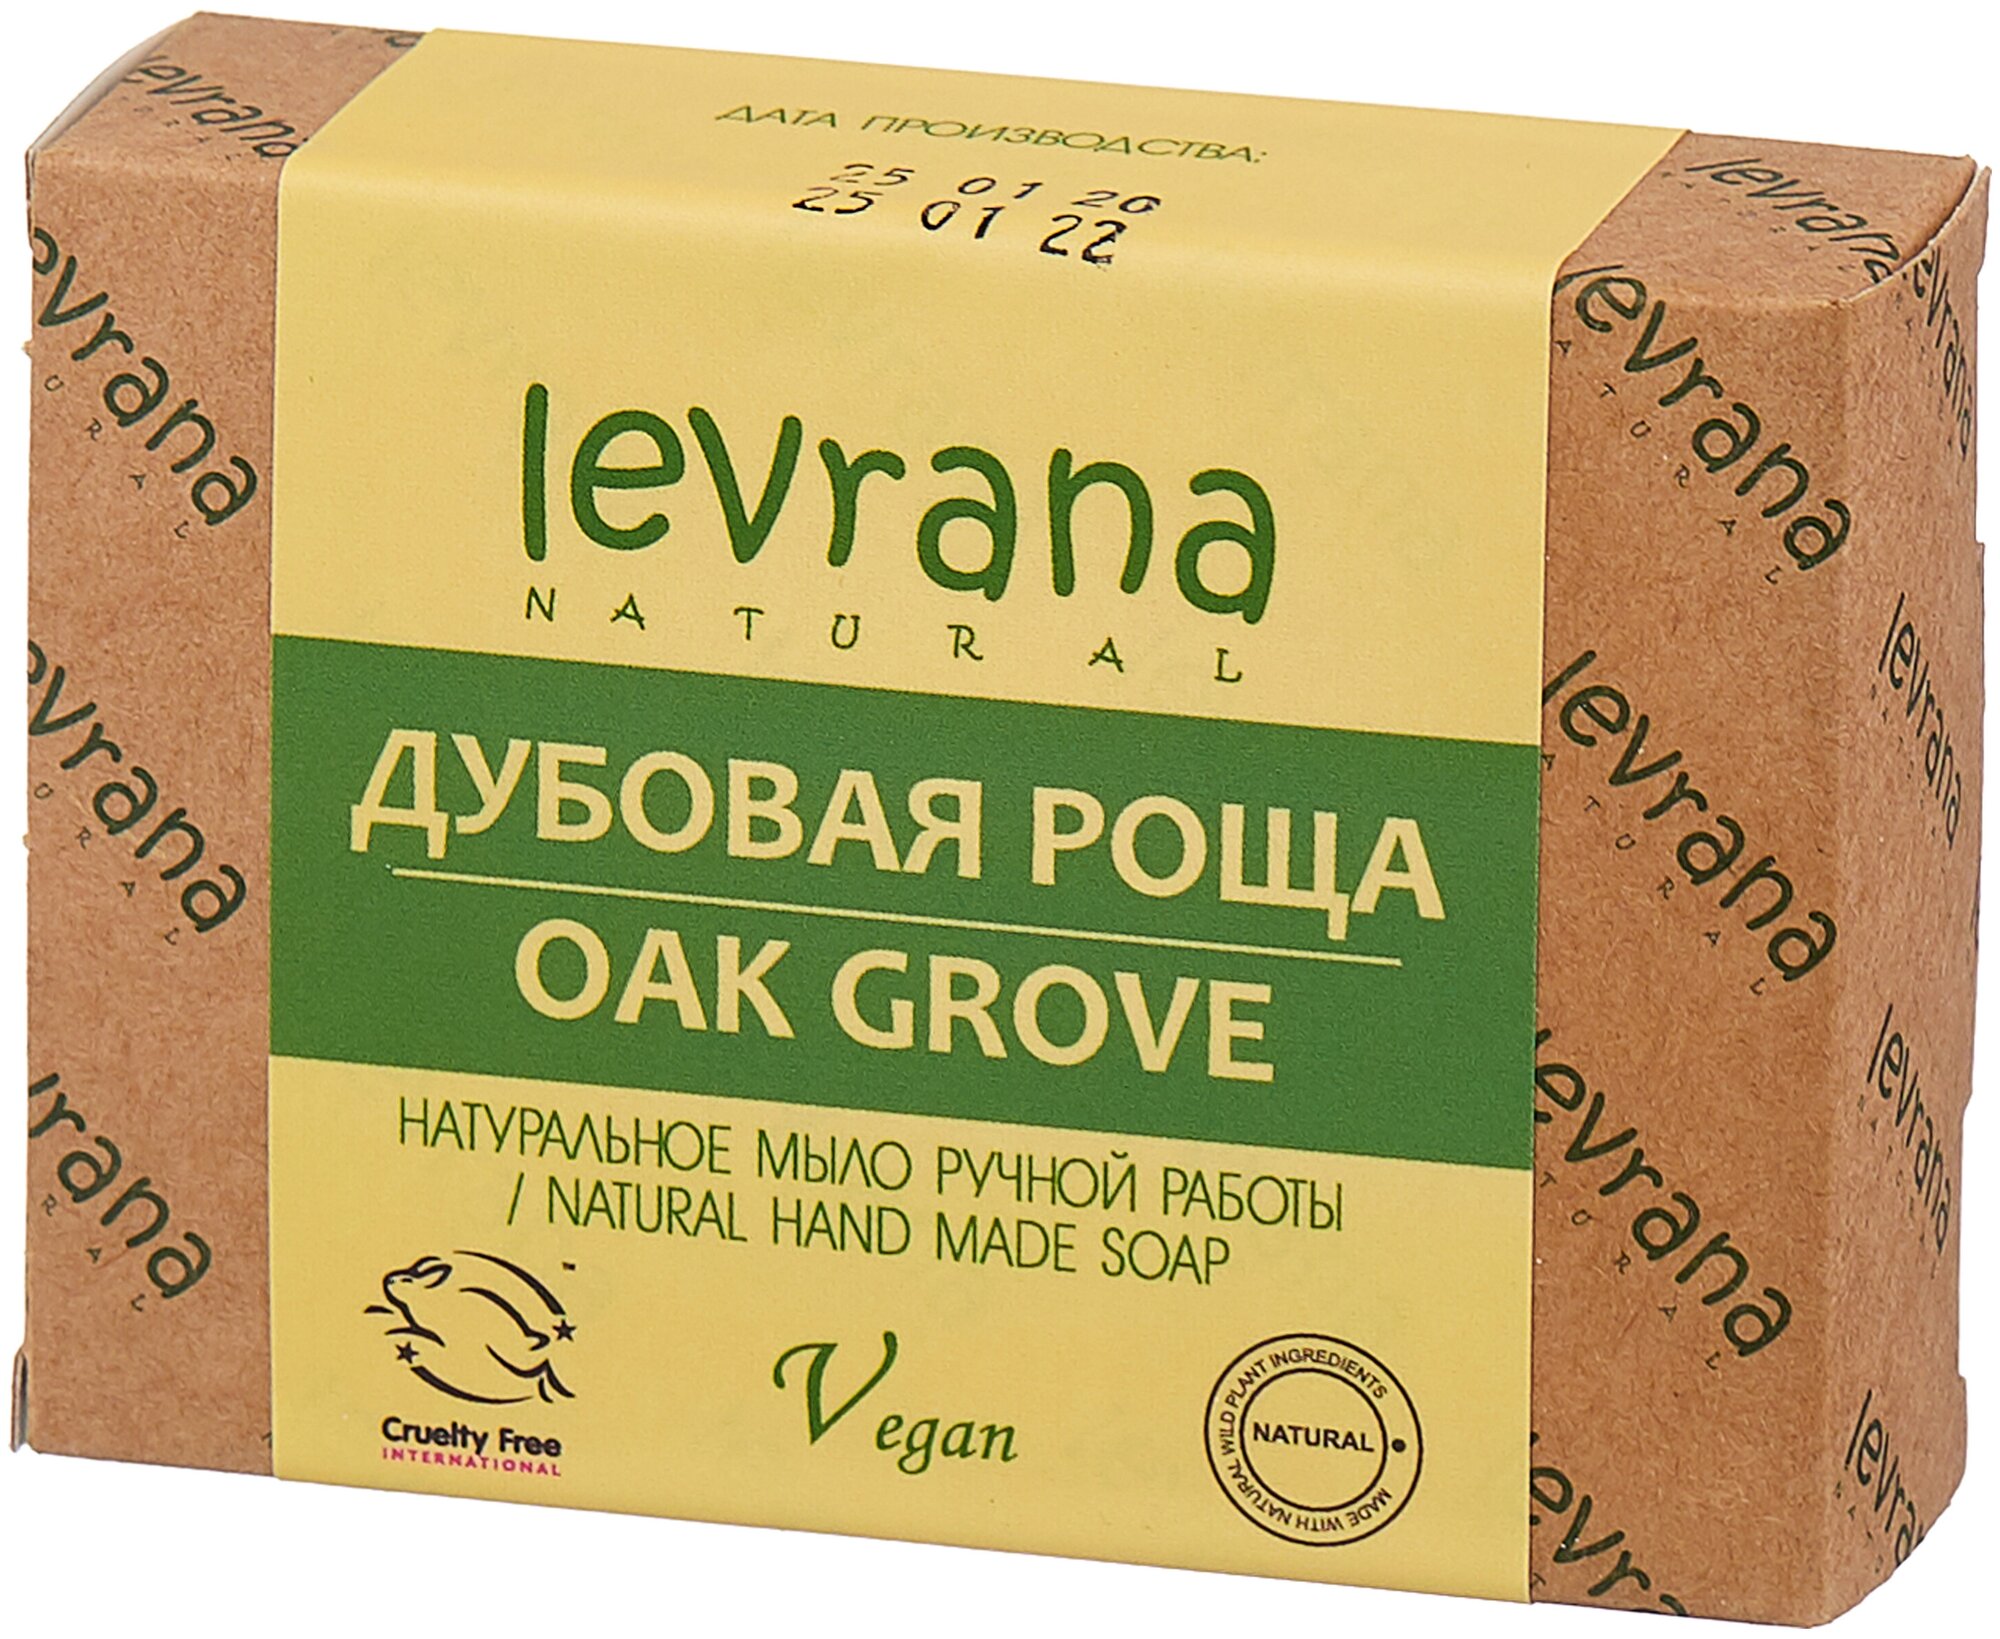 "Дубовая роща", натуральное мыло ручной работы, 100 гр, Levrana